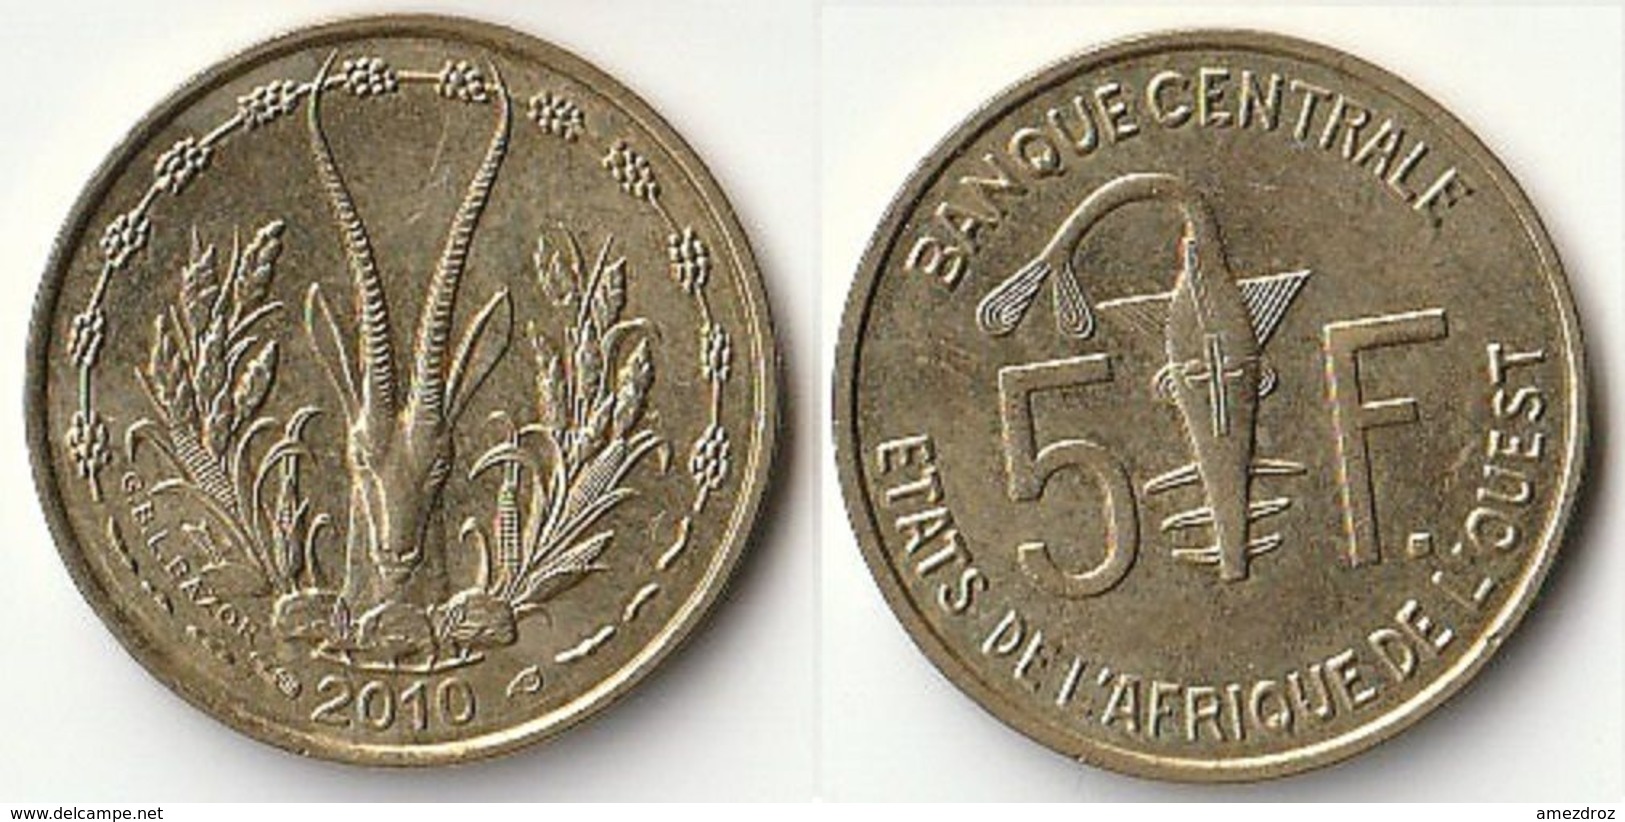 Pièce De 5 Francs CFA XOF 2010 Origine Côte D'Ivoire Afrique De L'Ouest (v) - Ivoorkust